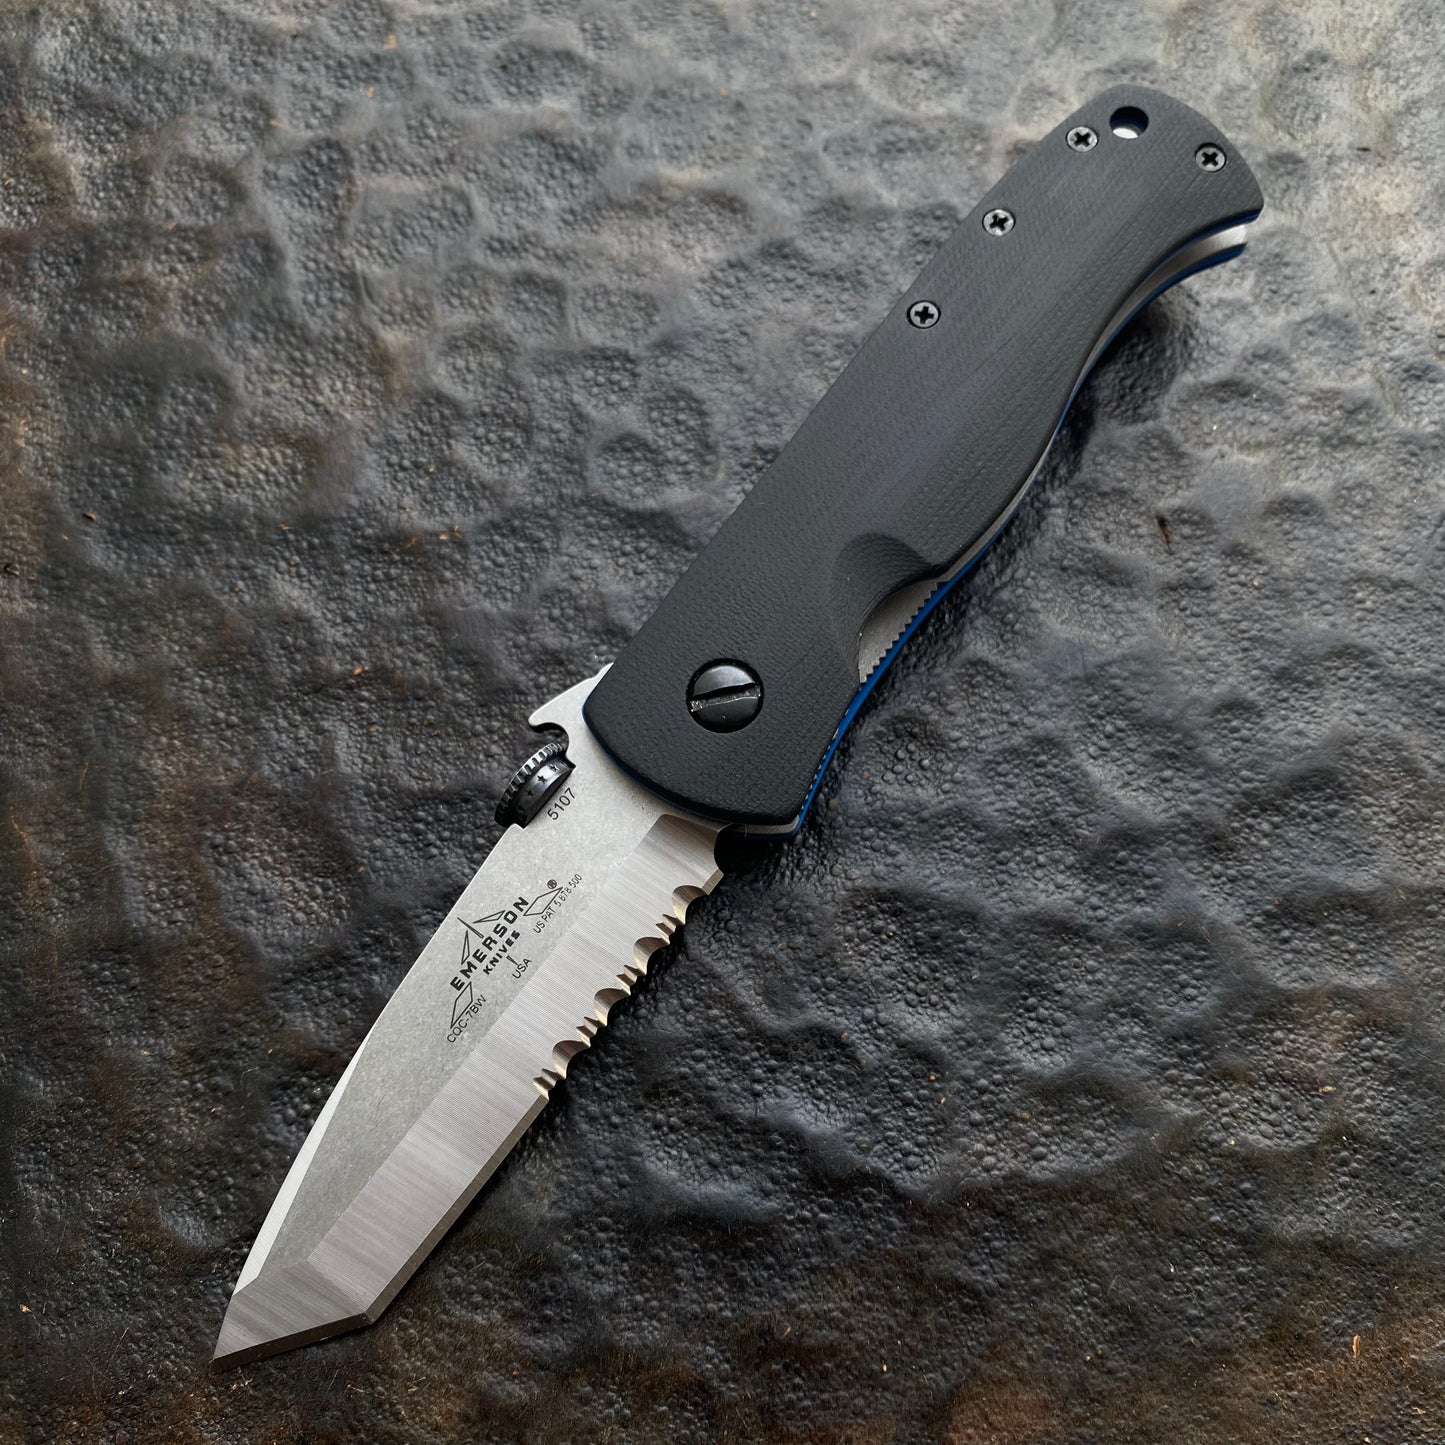 CQC 7 Full knife with Custom Work